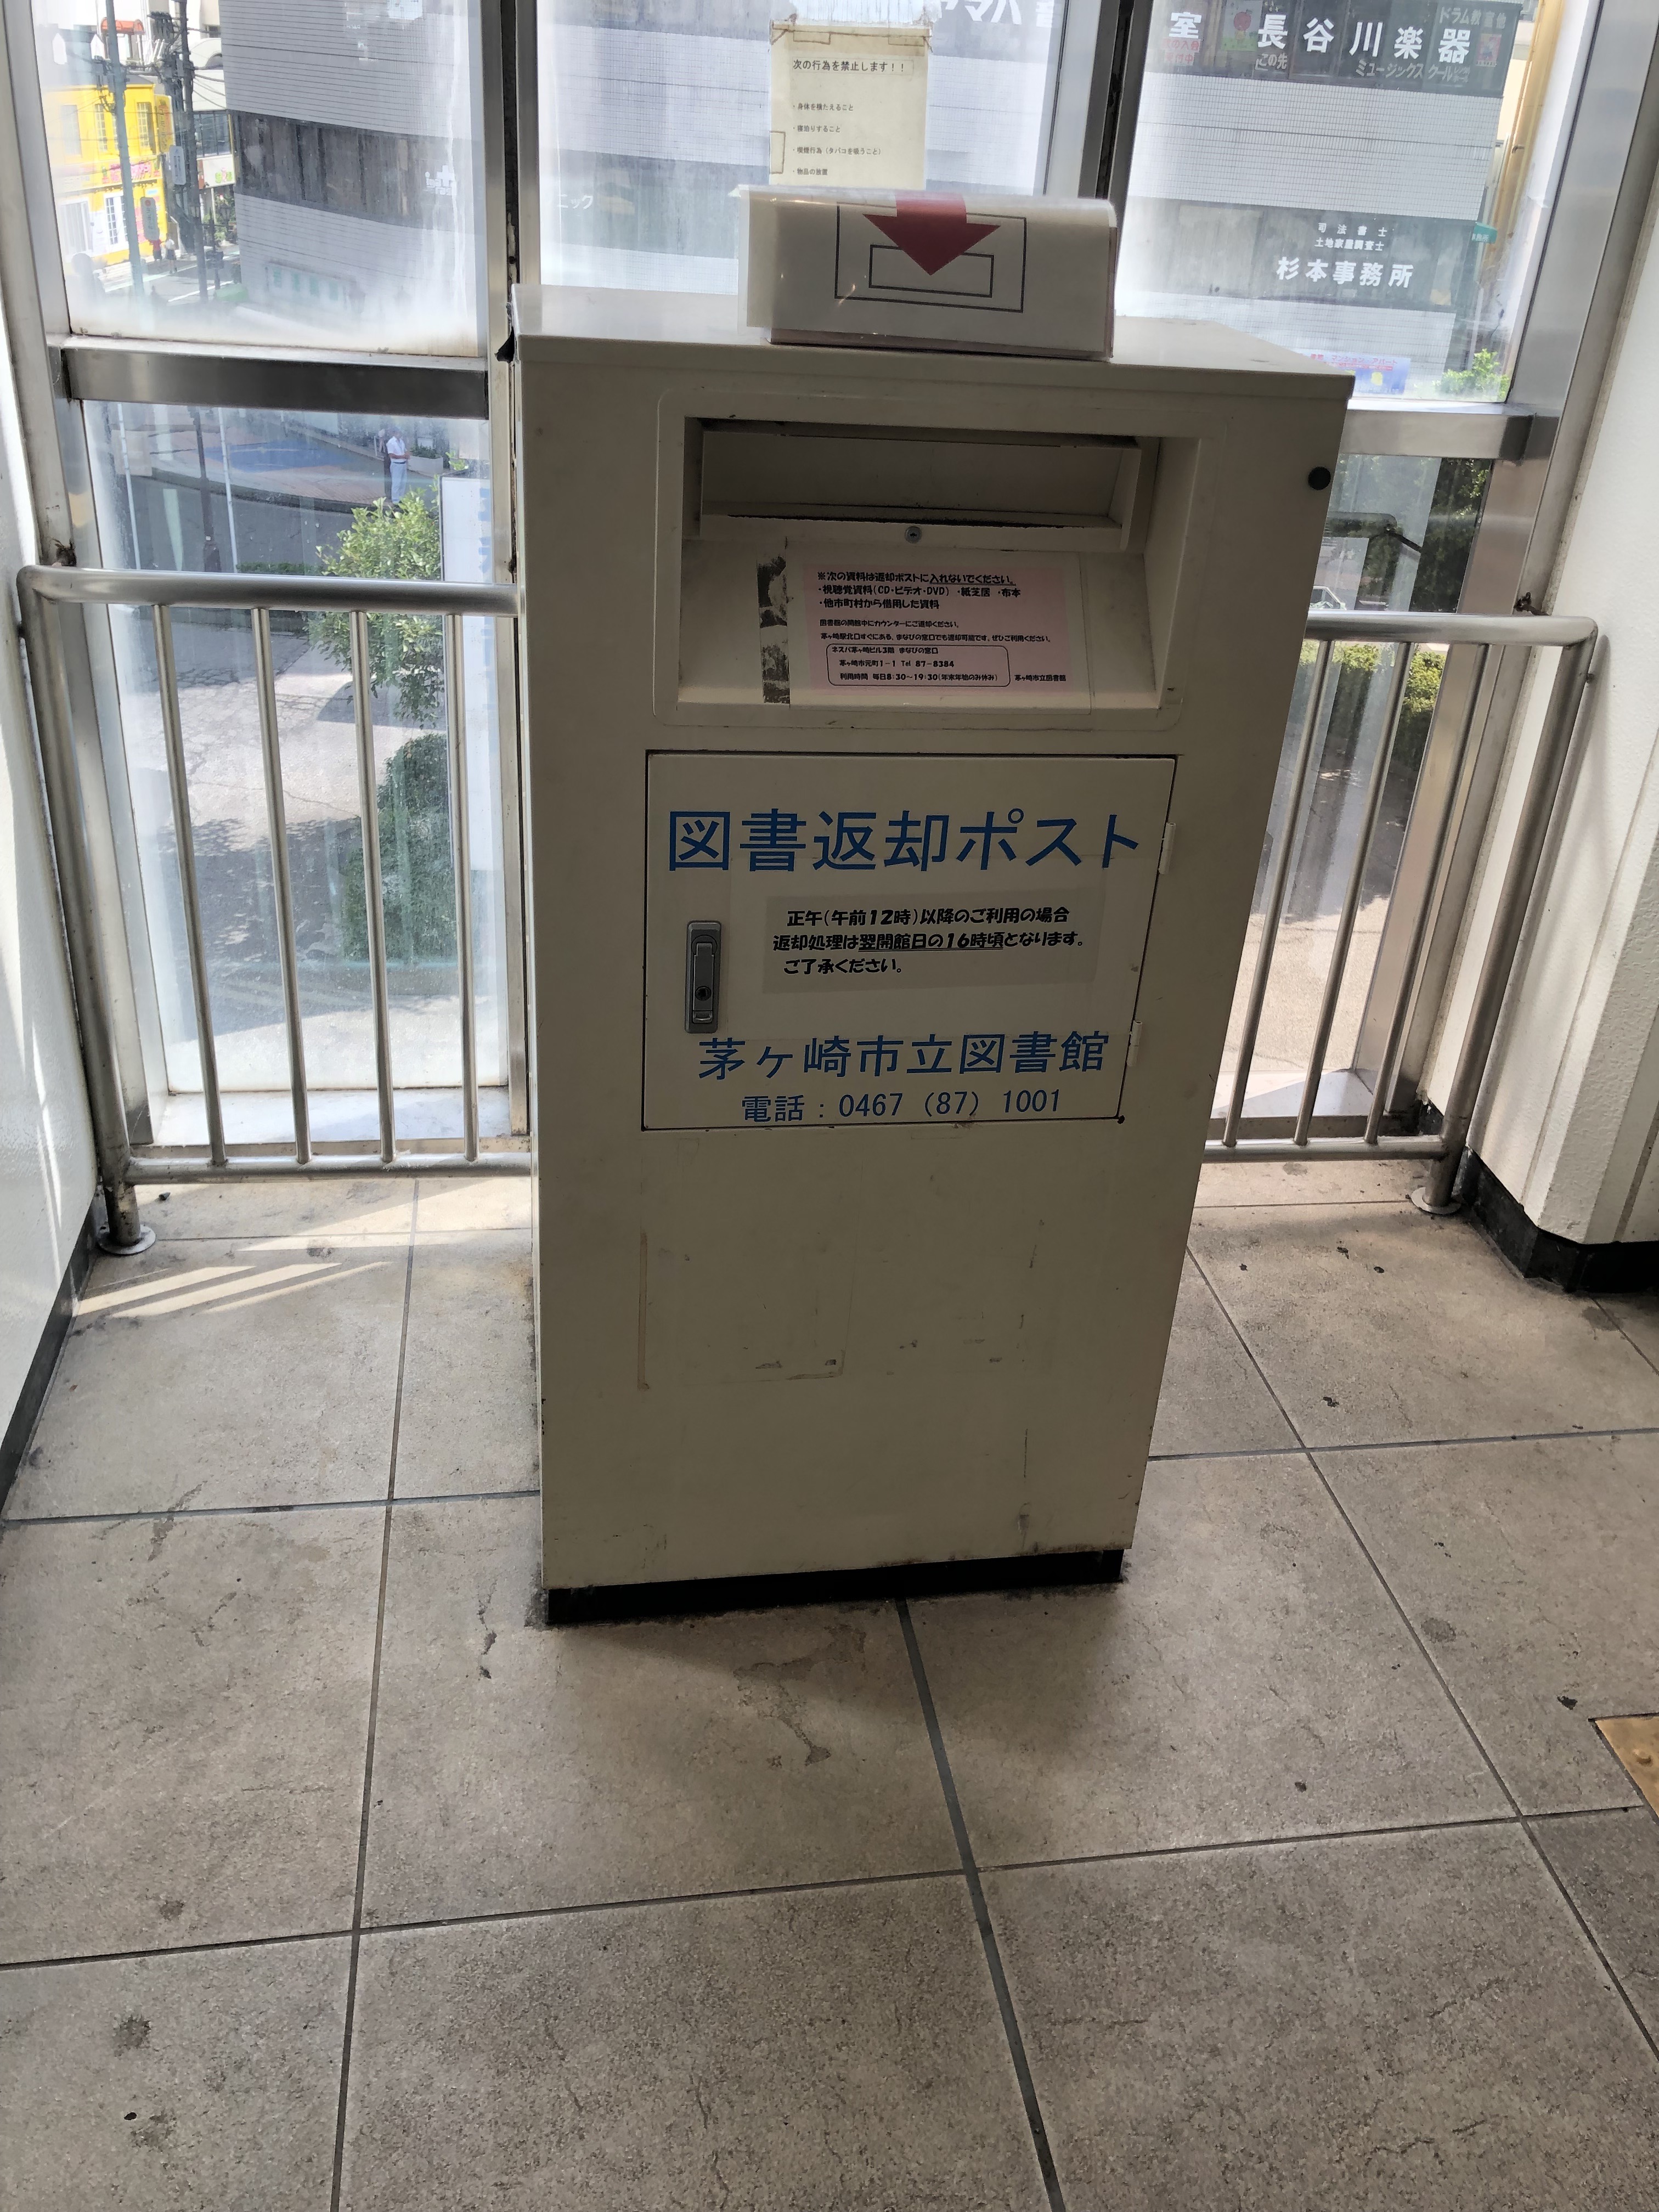 茅ヶ崎駅連絡通路、改札出て左に行くと図書館返却ポストがあるので、わざわざ図書館に返しにいかなくても良いらしい。